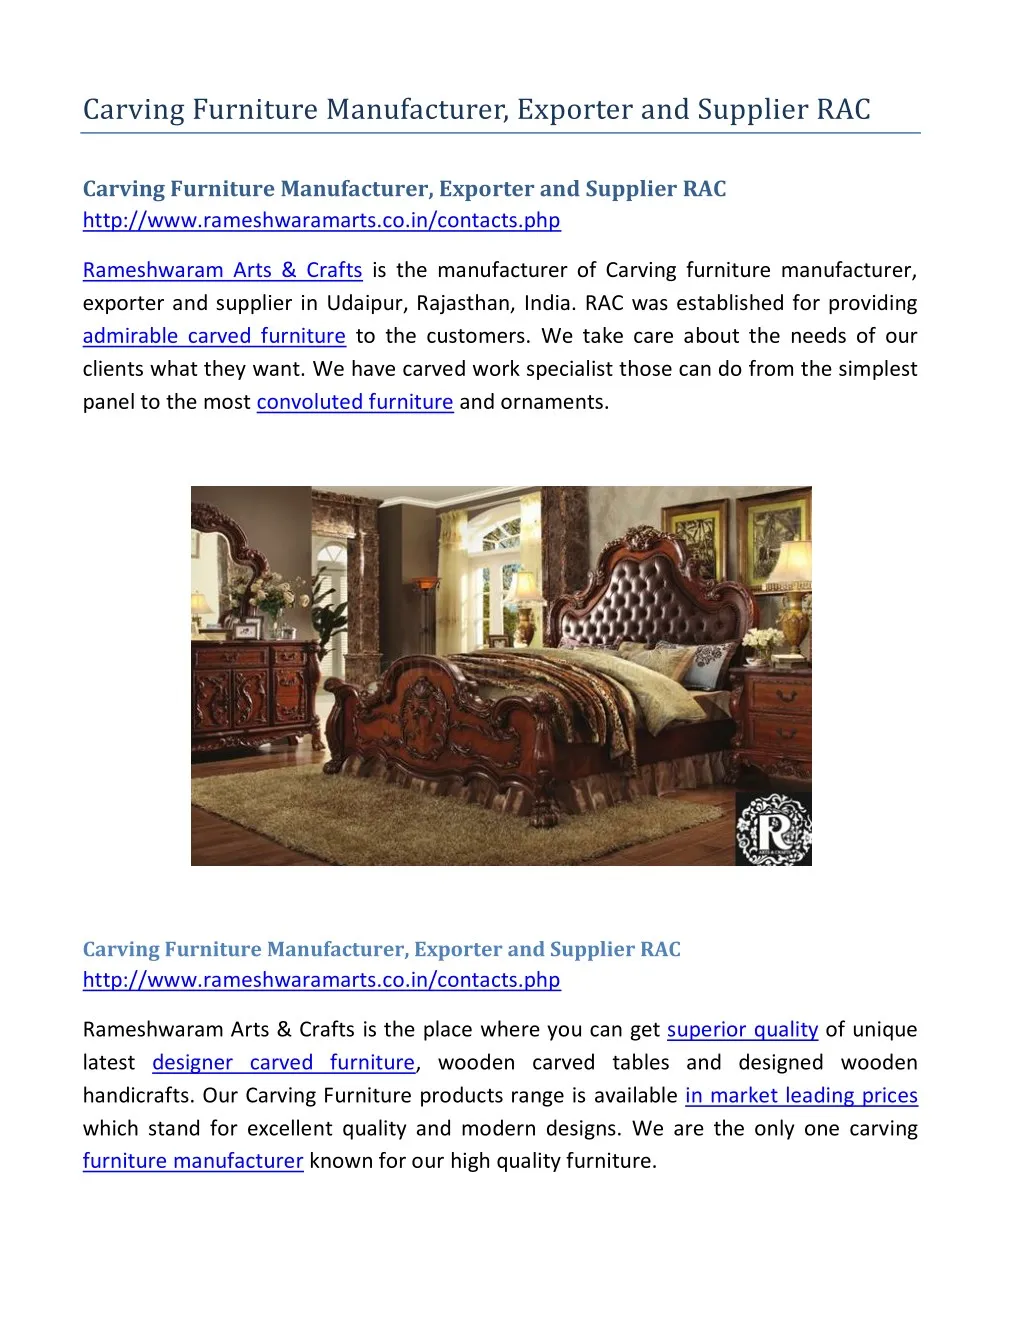 carving furniture manufacturer exporter